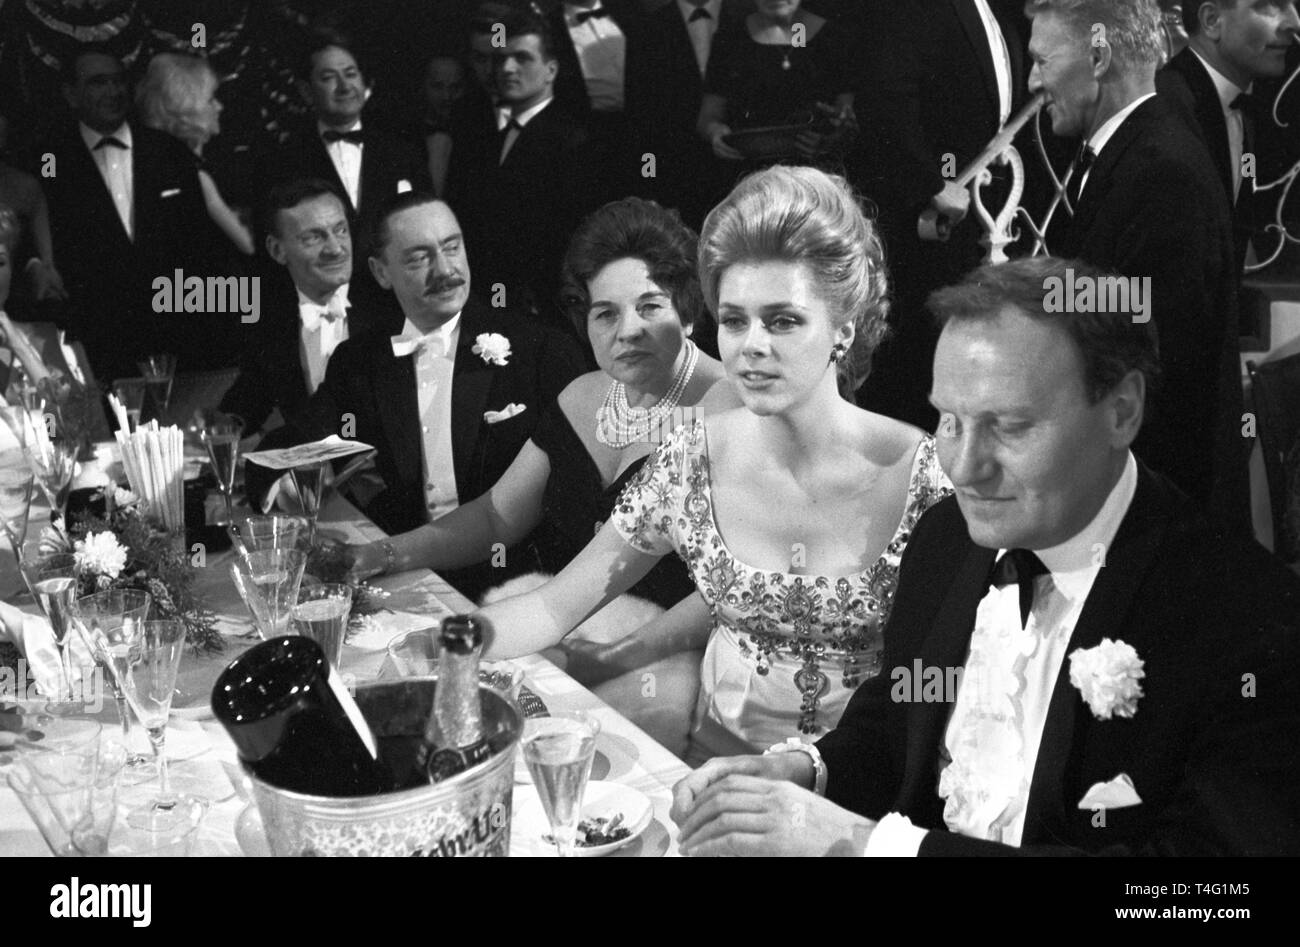 Industrielle finanzier Rudolf Münemann (r), seine Frau (l) und ihre Tochter Angela Münemann (M) sind unter den Gästen am Bal Paré in München (undatiert Archiv Bild aus 1963). | Verwendung weltweit Stockfoto